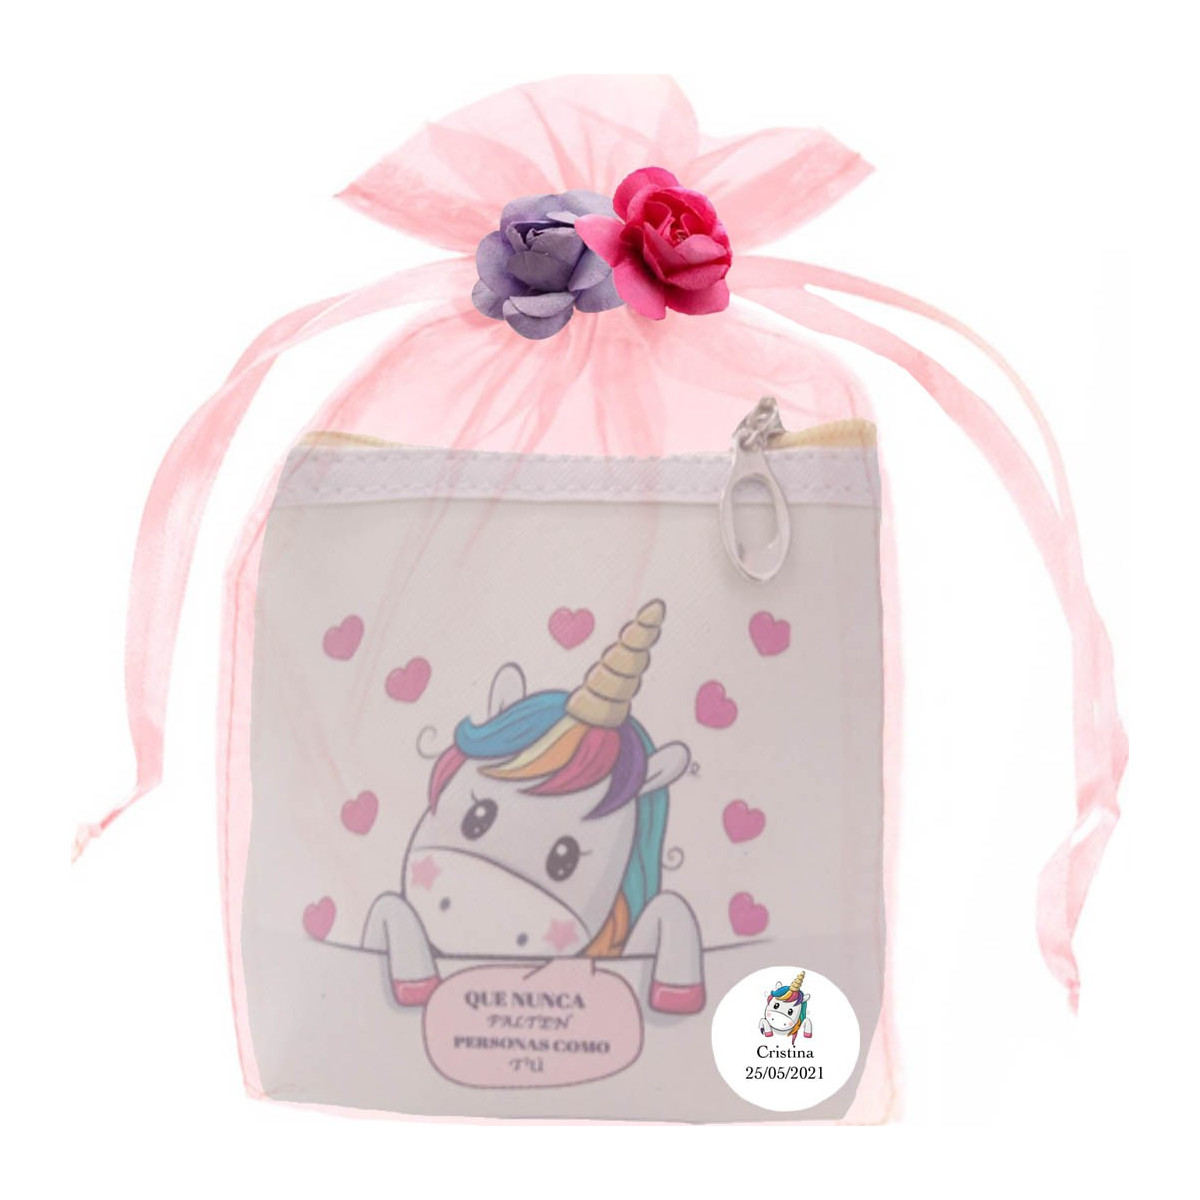 Borsa unicorno quadrata personalizzata e presentata in una borsa con fiori di carta